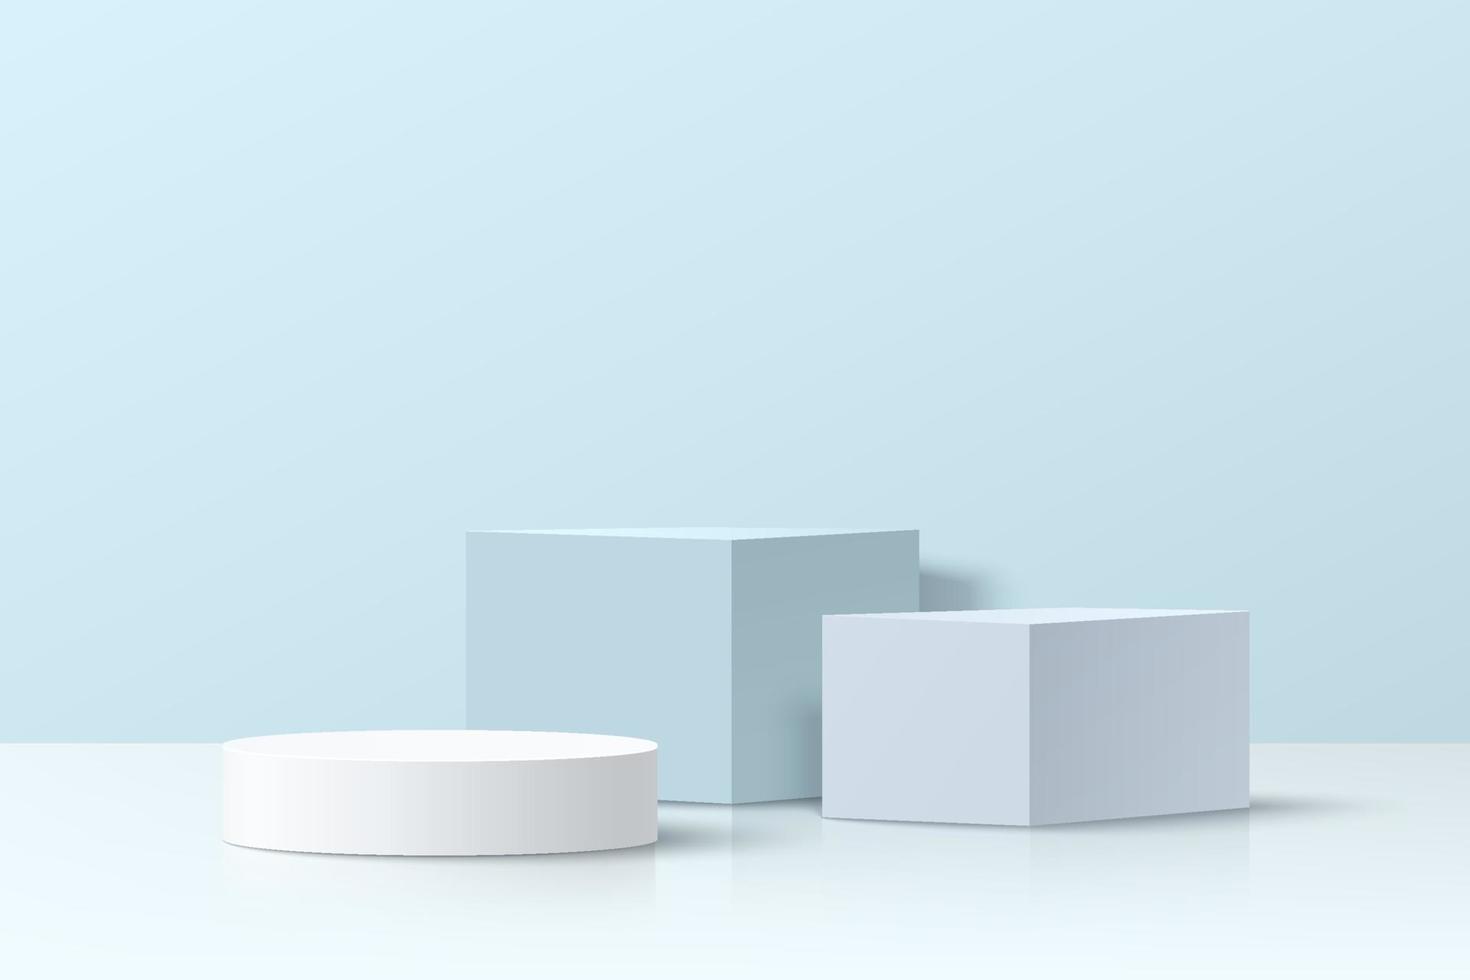 realistico bianco e blu 3d cubo e cilindro piedistallo podio ambientato in una stanza astratta con ombra della finestra. scena minima per vetrina di prodotti, display promozionale. disegno del gruppo di forme geometriche vettoriali